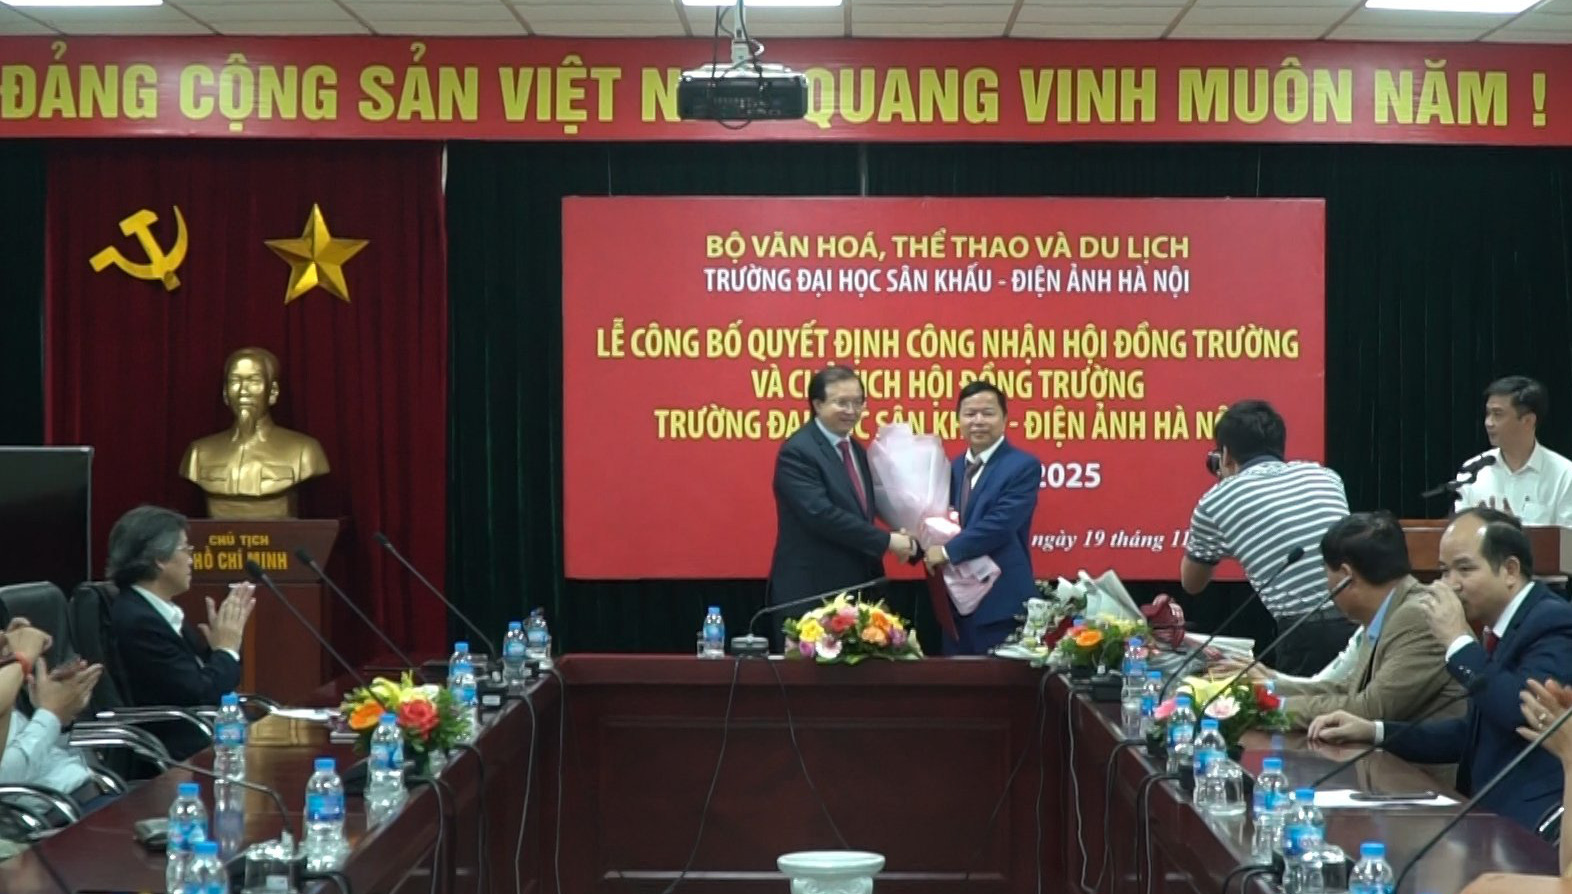 Công bố quyết định thành lập Hội đồng trường Đại học Sân khấu - Điện ảnh và Học viện Múa Việt Nam - Ảnh 2.